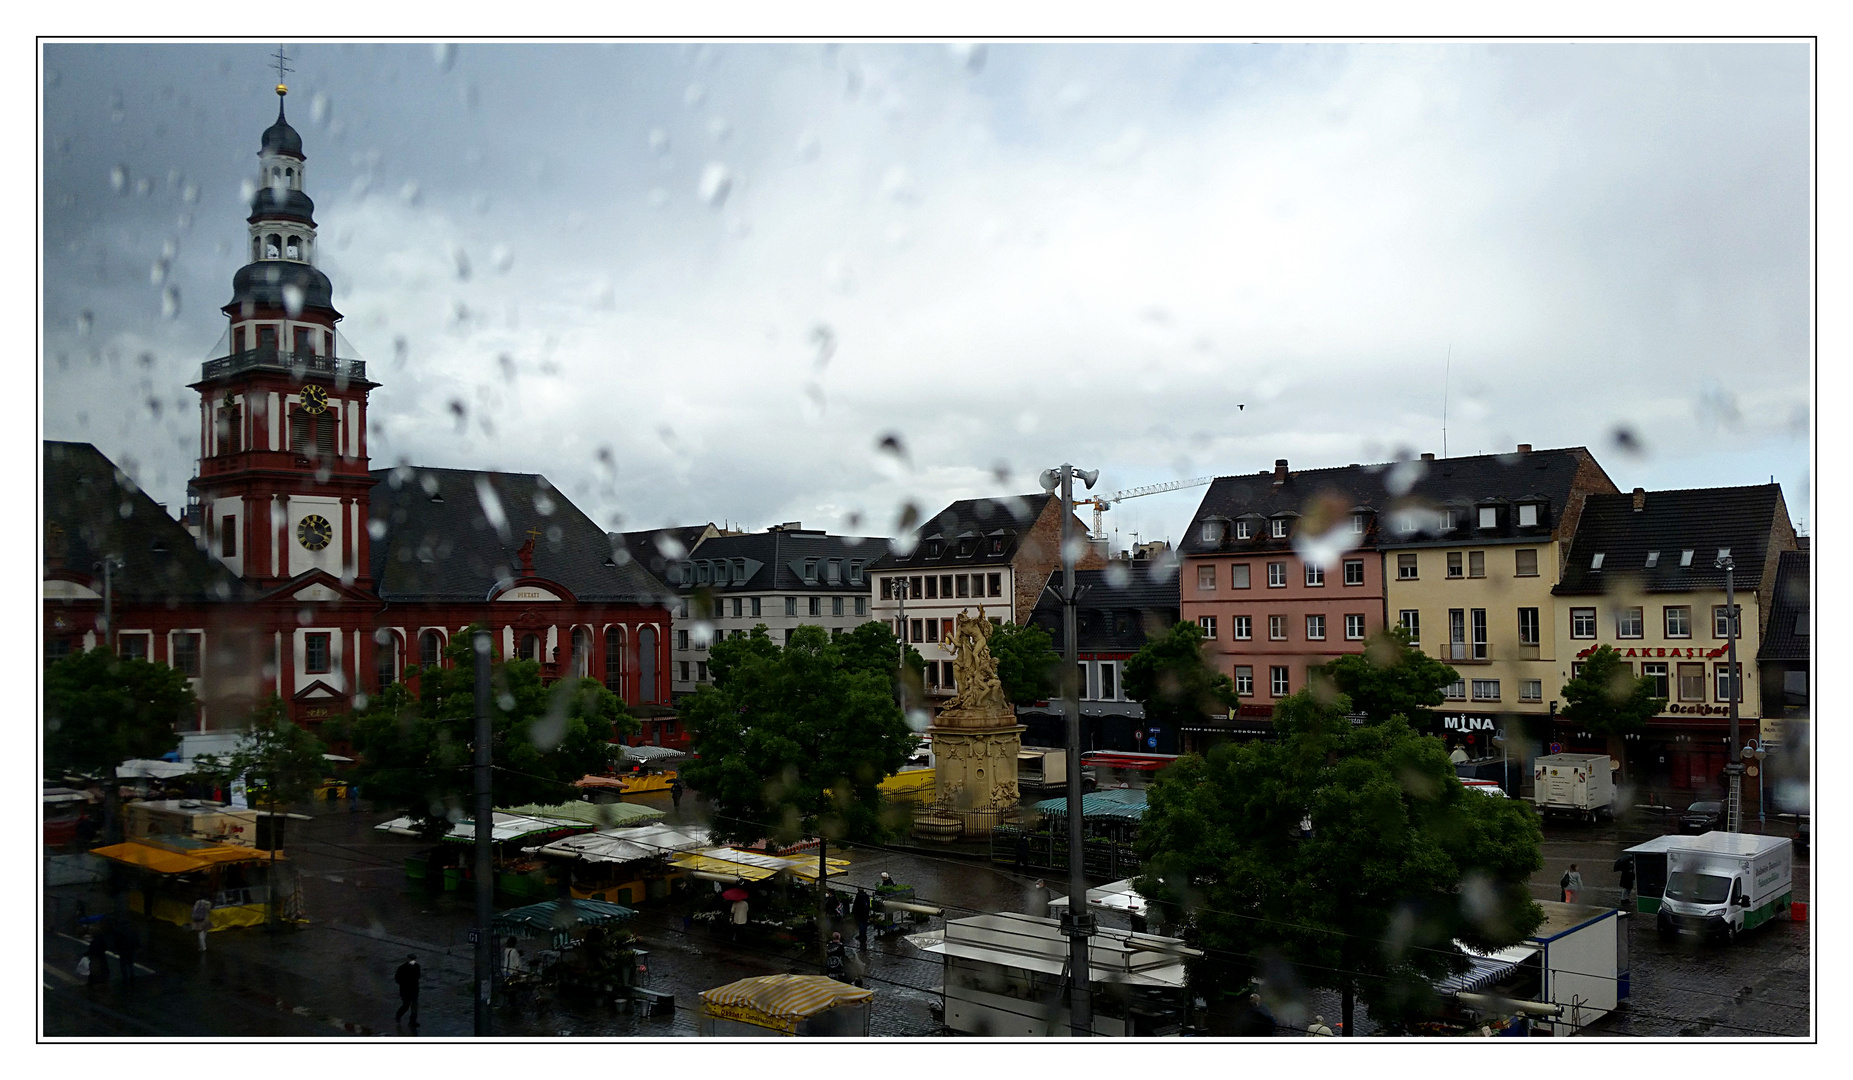 Monnem - Rainy Days